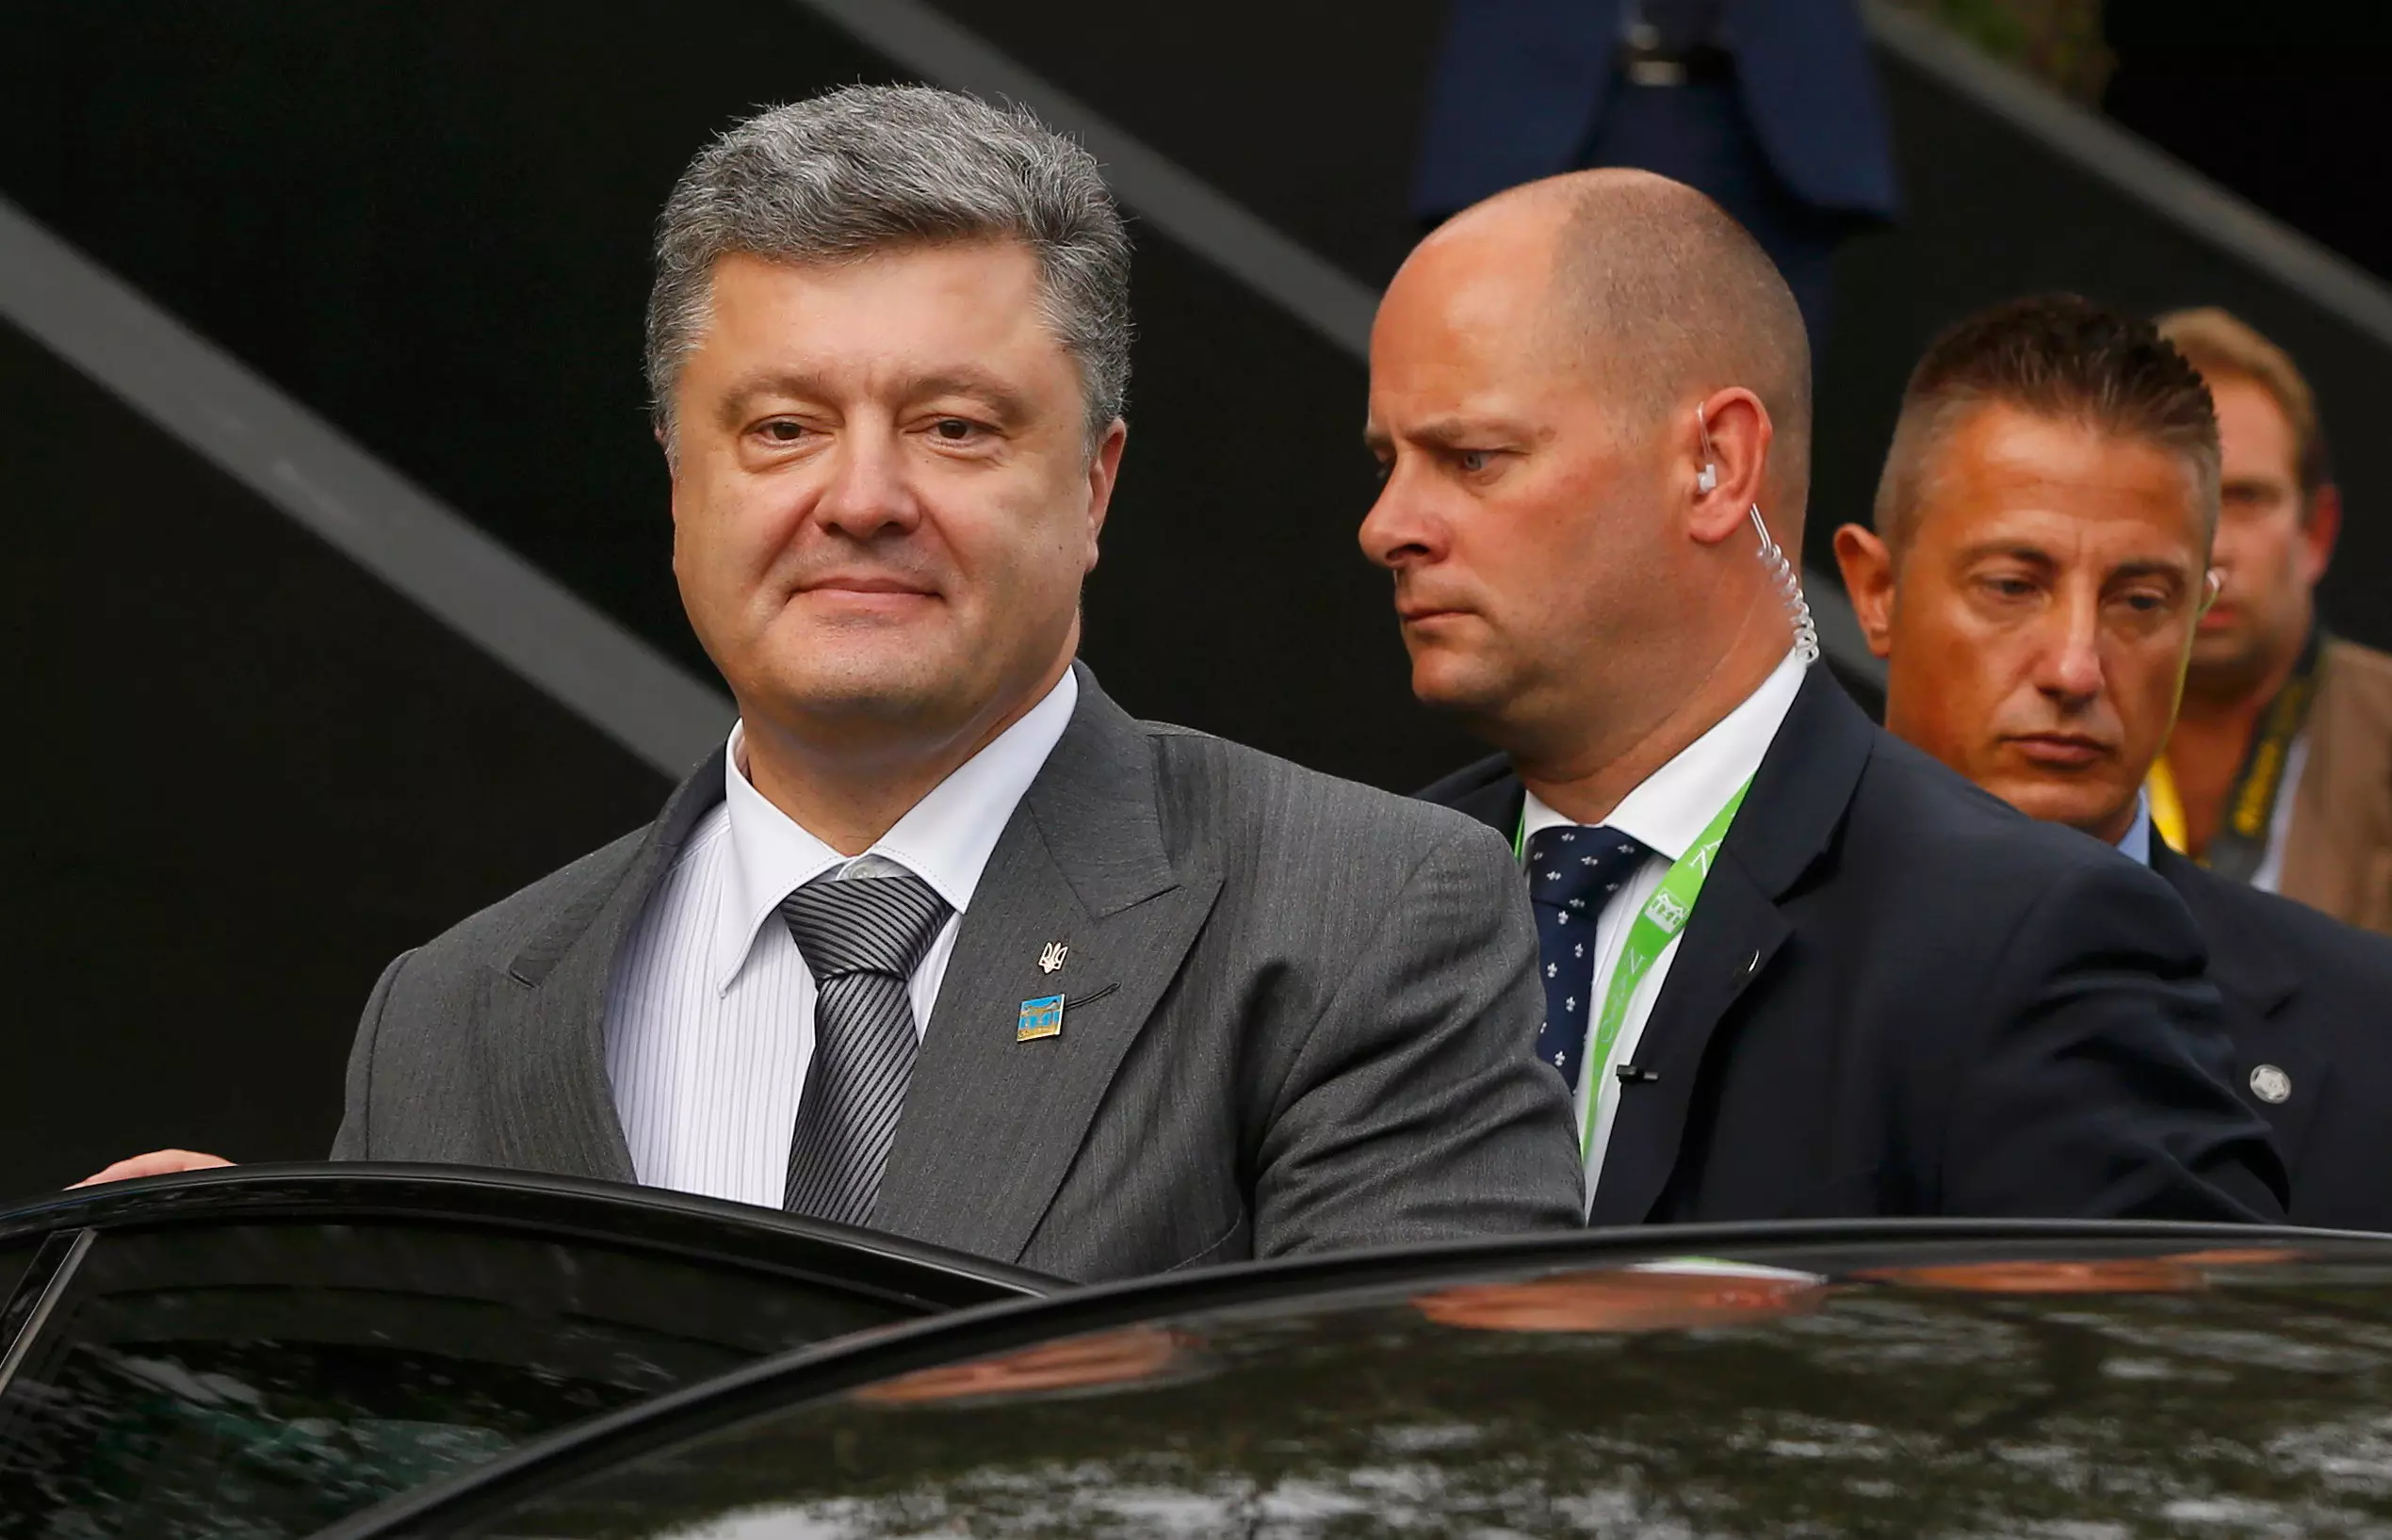 לא סיפק פרטים בנוגע להסכם. נשיא אוקראינה פורושנקו